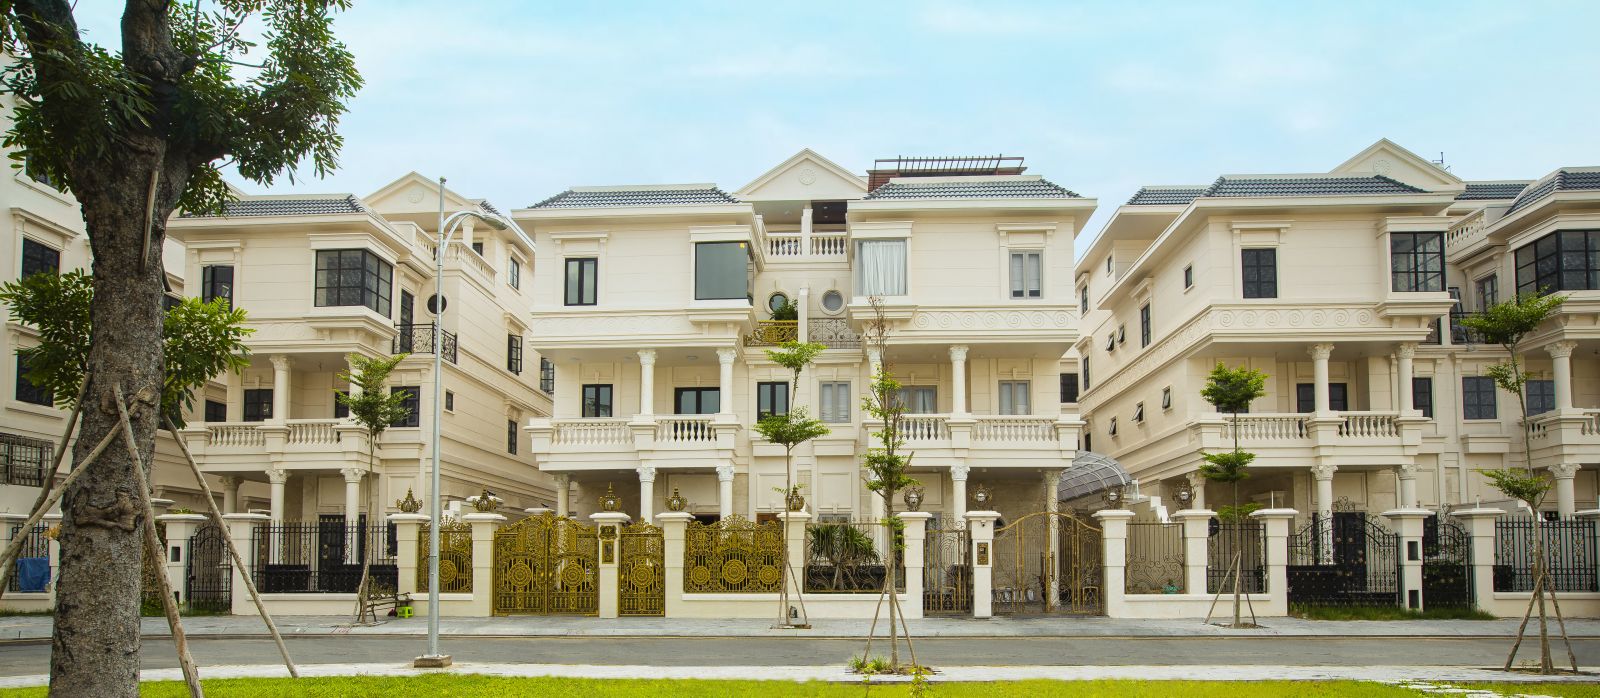 Nhu cầu sở hữu đa tài sản, điển hình là bất động sản giá trị cao tương đồng với tỉ lệ gia tăng tầng lớp thượng lưu Việt Nam